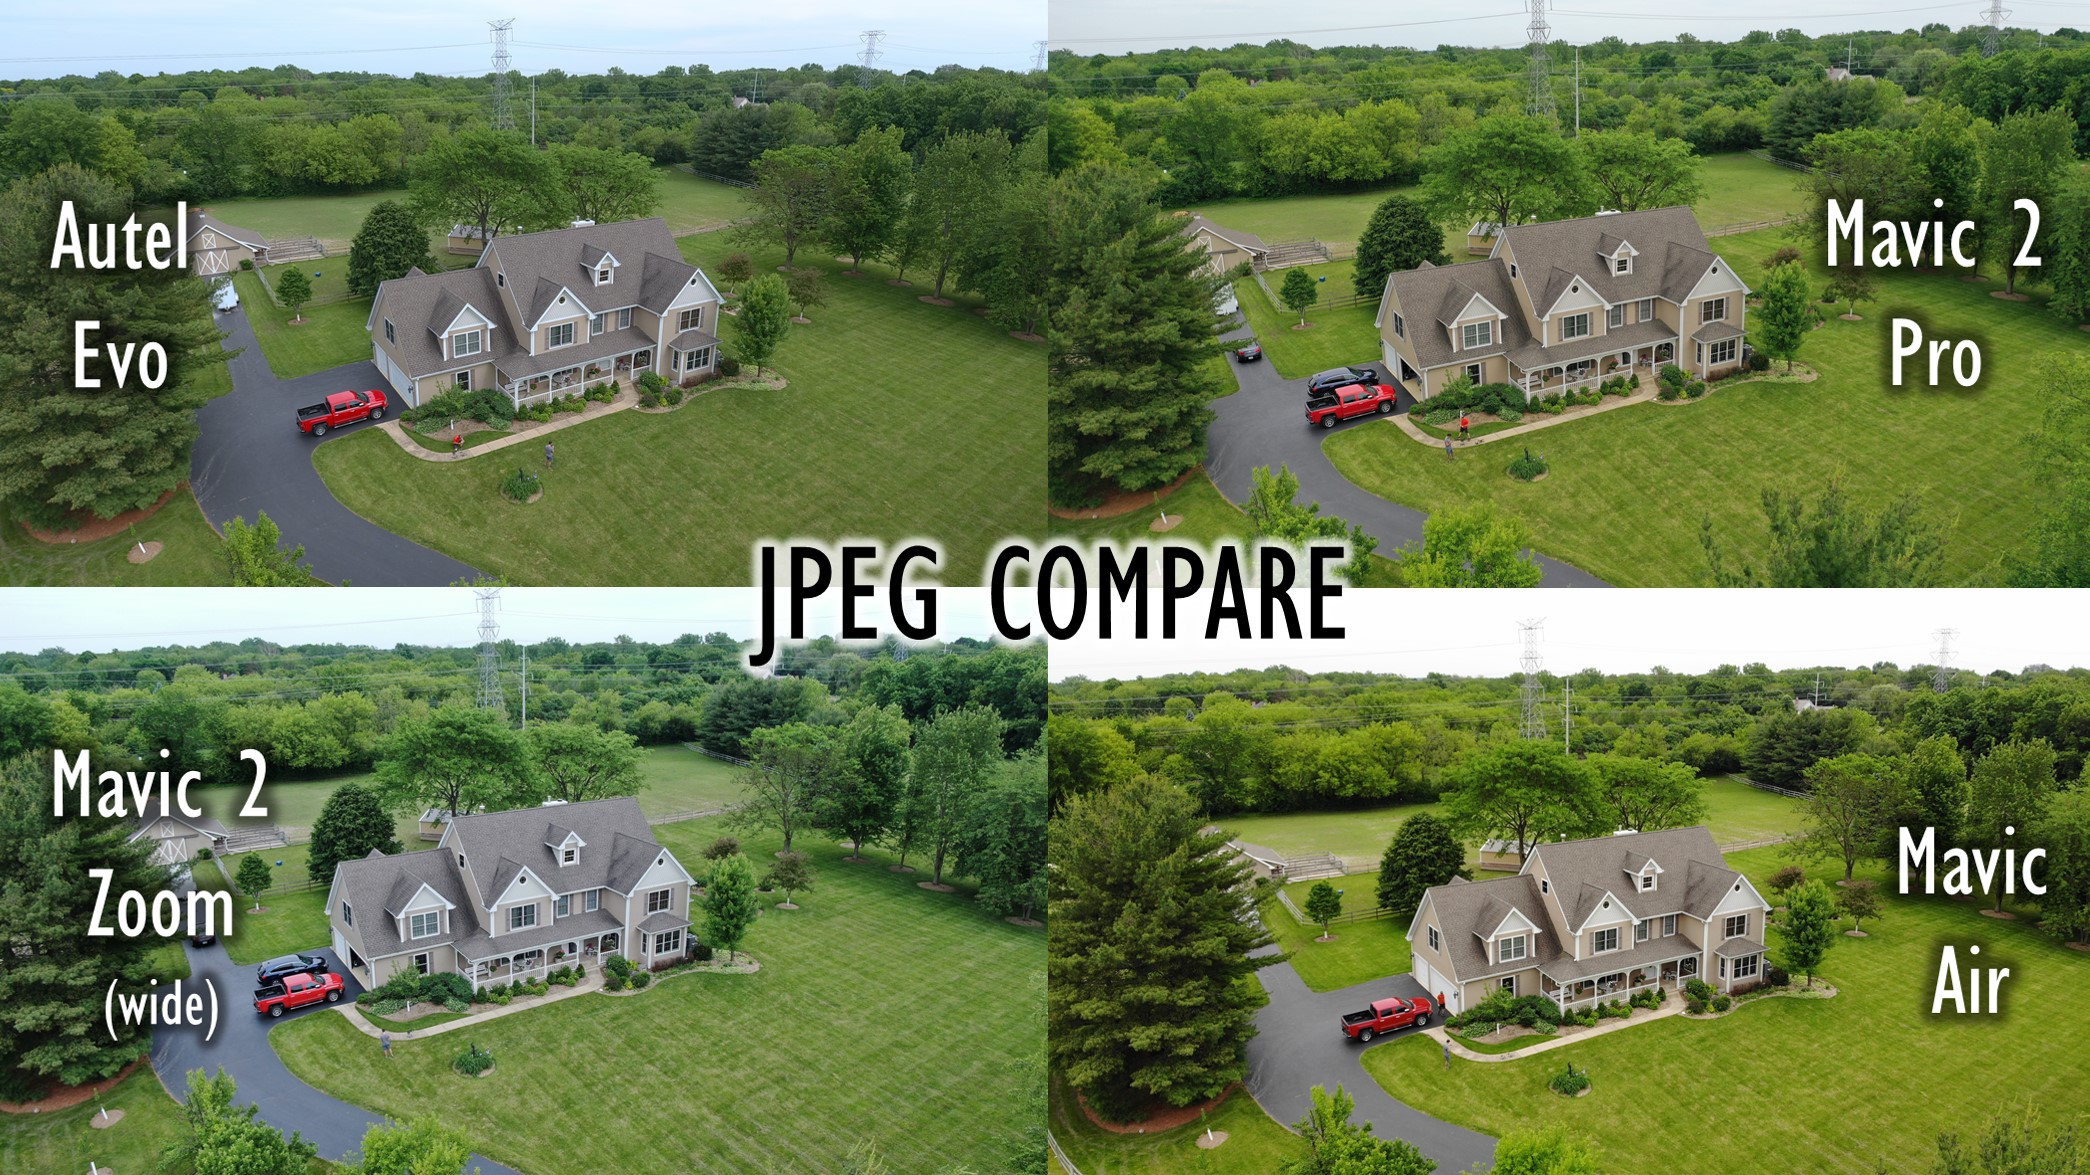 Autel Evo JPEGs compared to DJI Mavic Drones